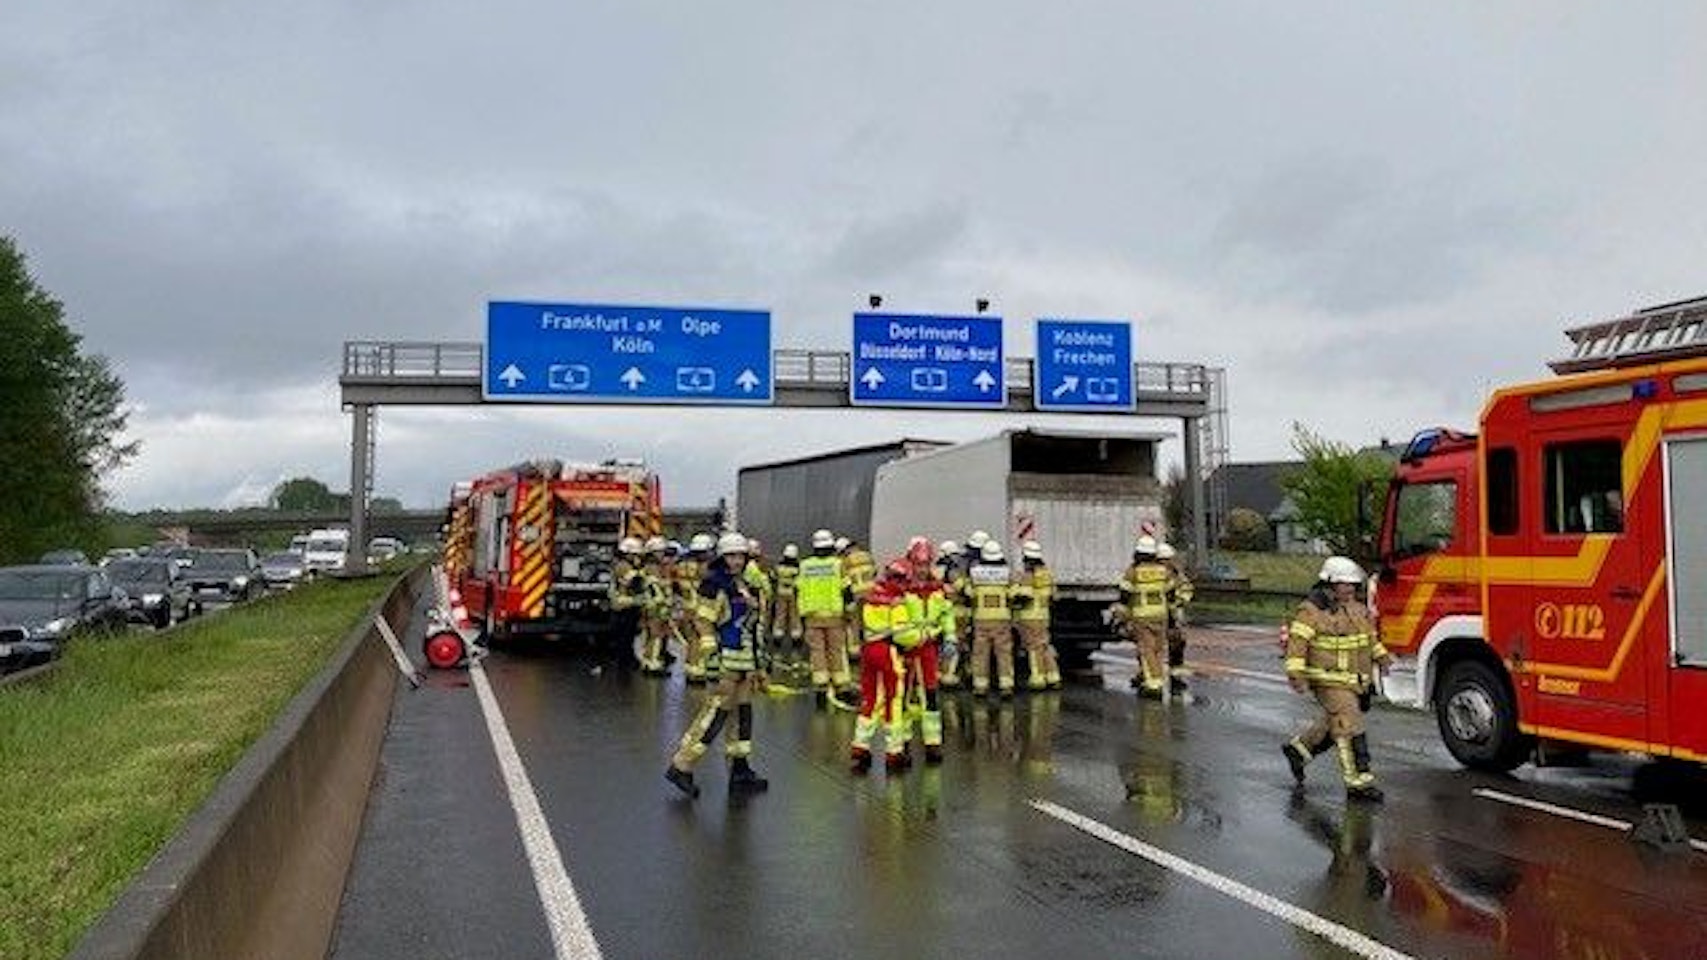 Auf der Autobahn stehen zwei Lkw ineinander geschoben. Darum herum stehen Feuerwehr-Autos und Feuerwehrleute und Rettungskräfte.